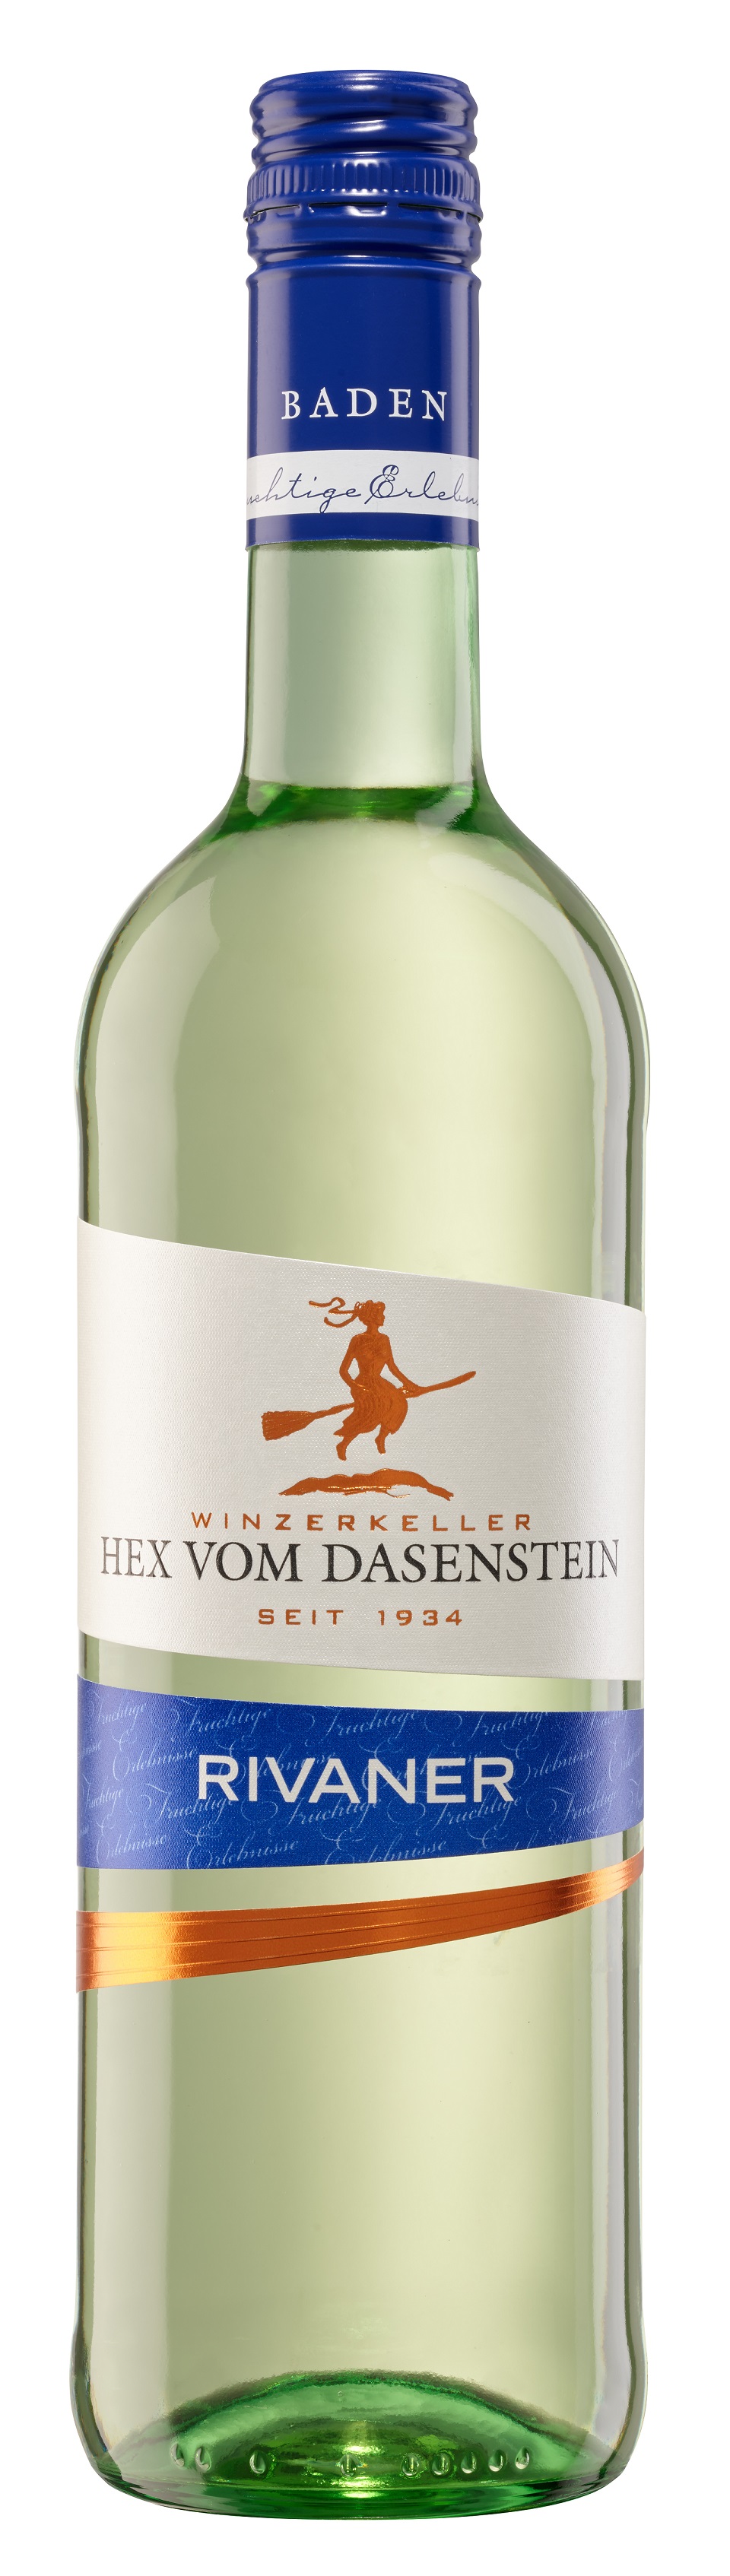 Hex vom Dasenstein, Rivaner Qualitätswein feinherb